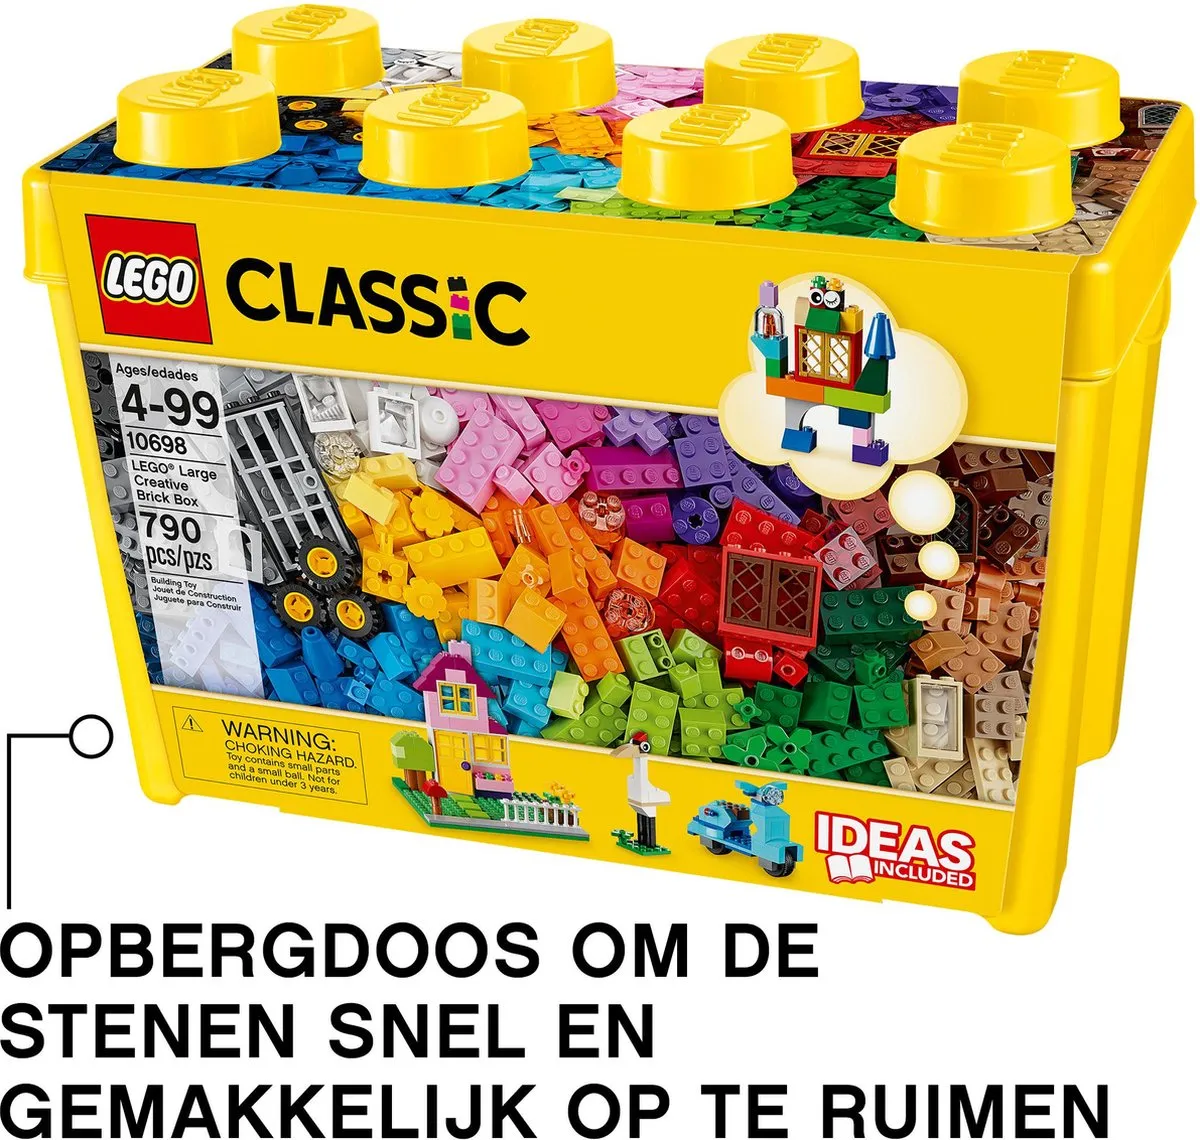 motor Niet doen Toevlucht LEGO Classic Creatieve Grote Opbergdoos - 10698